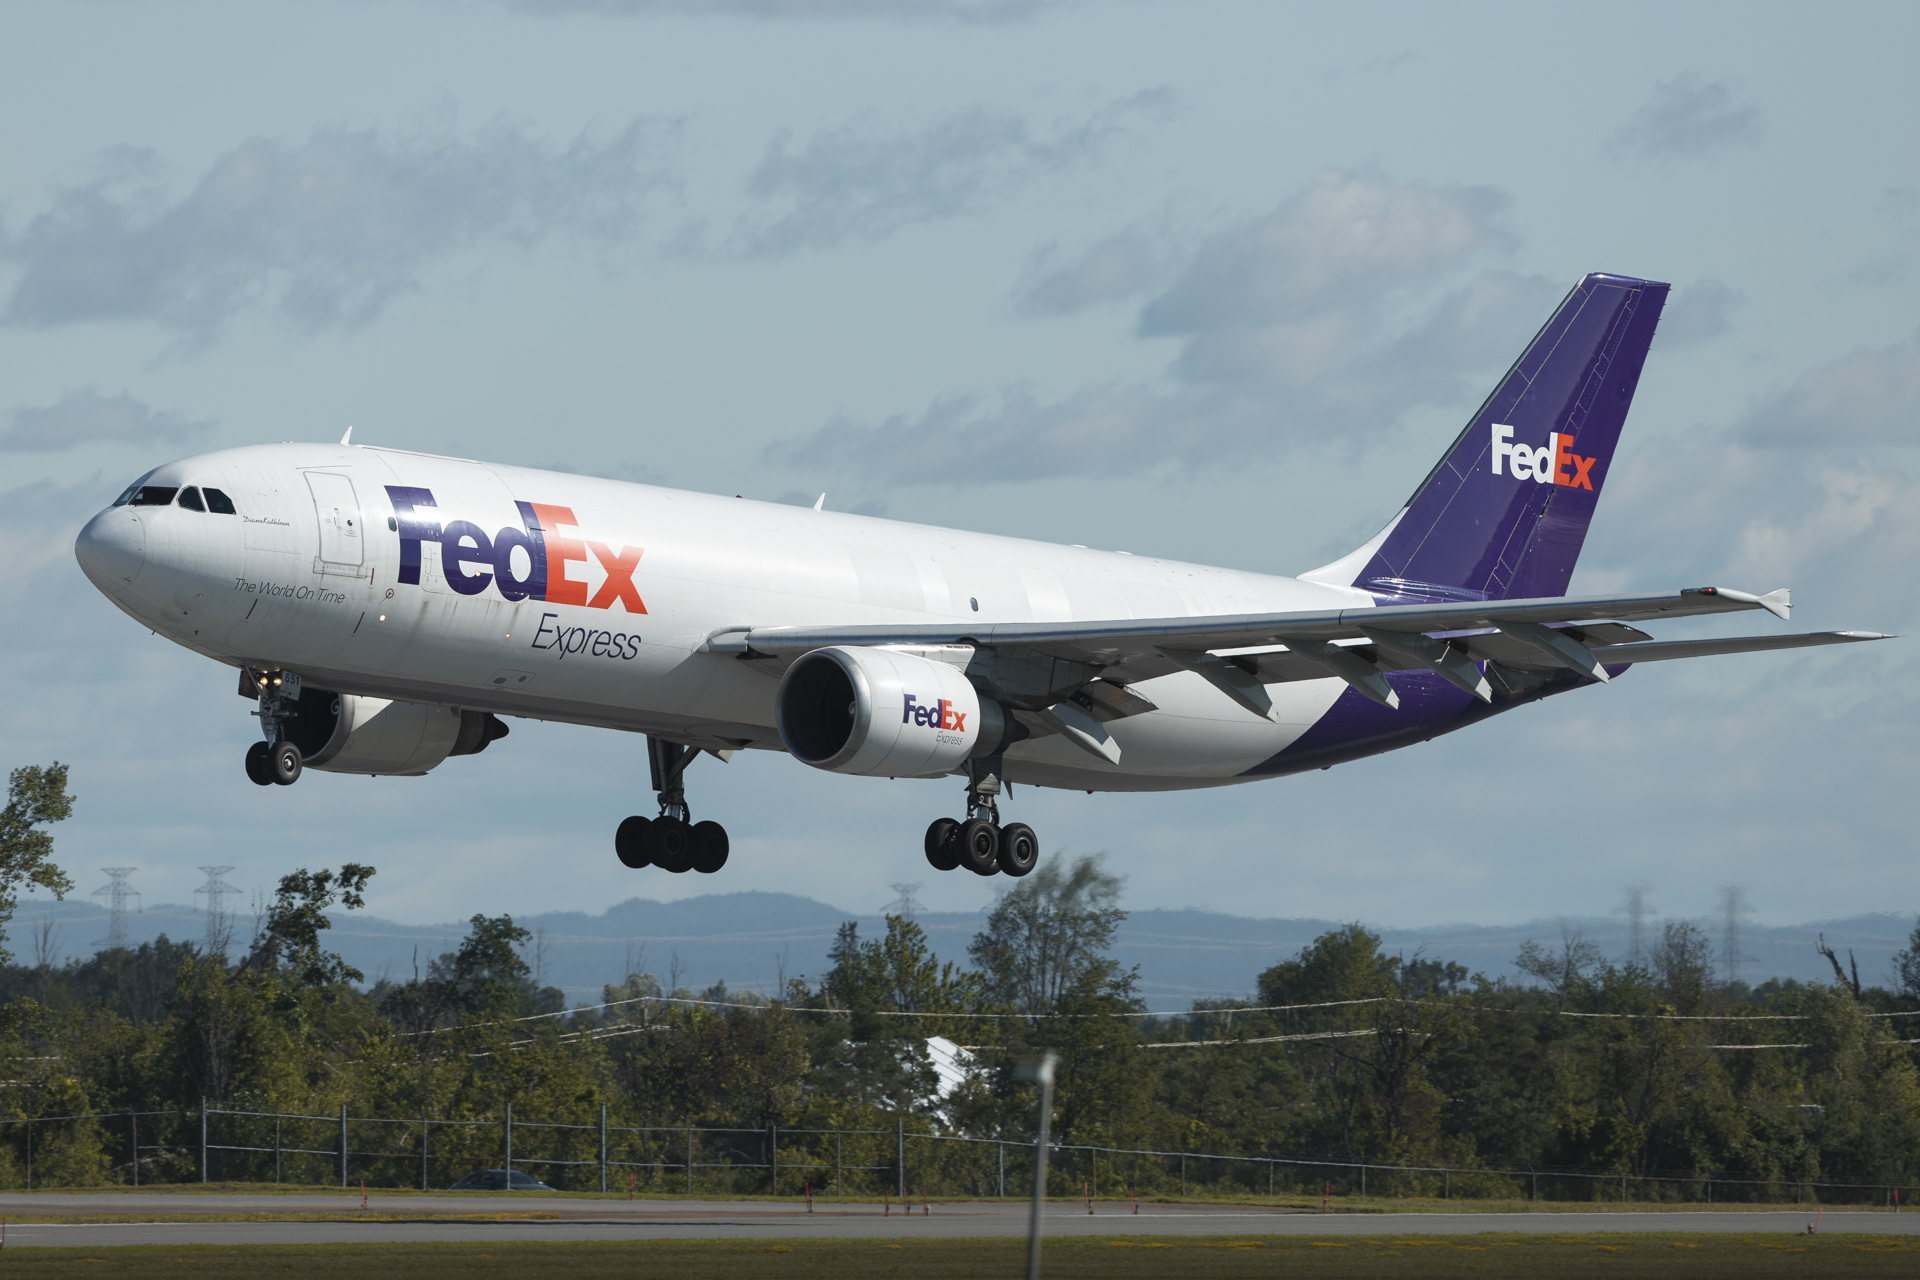 Fedex A300